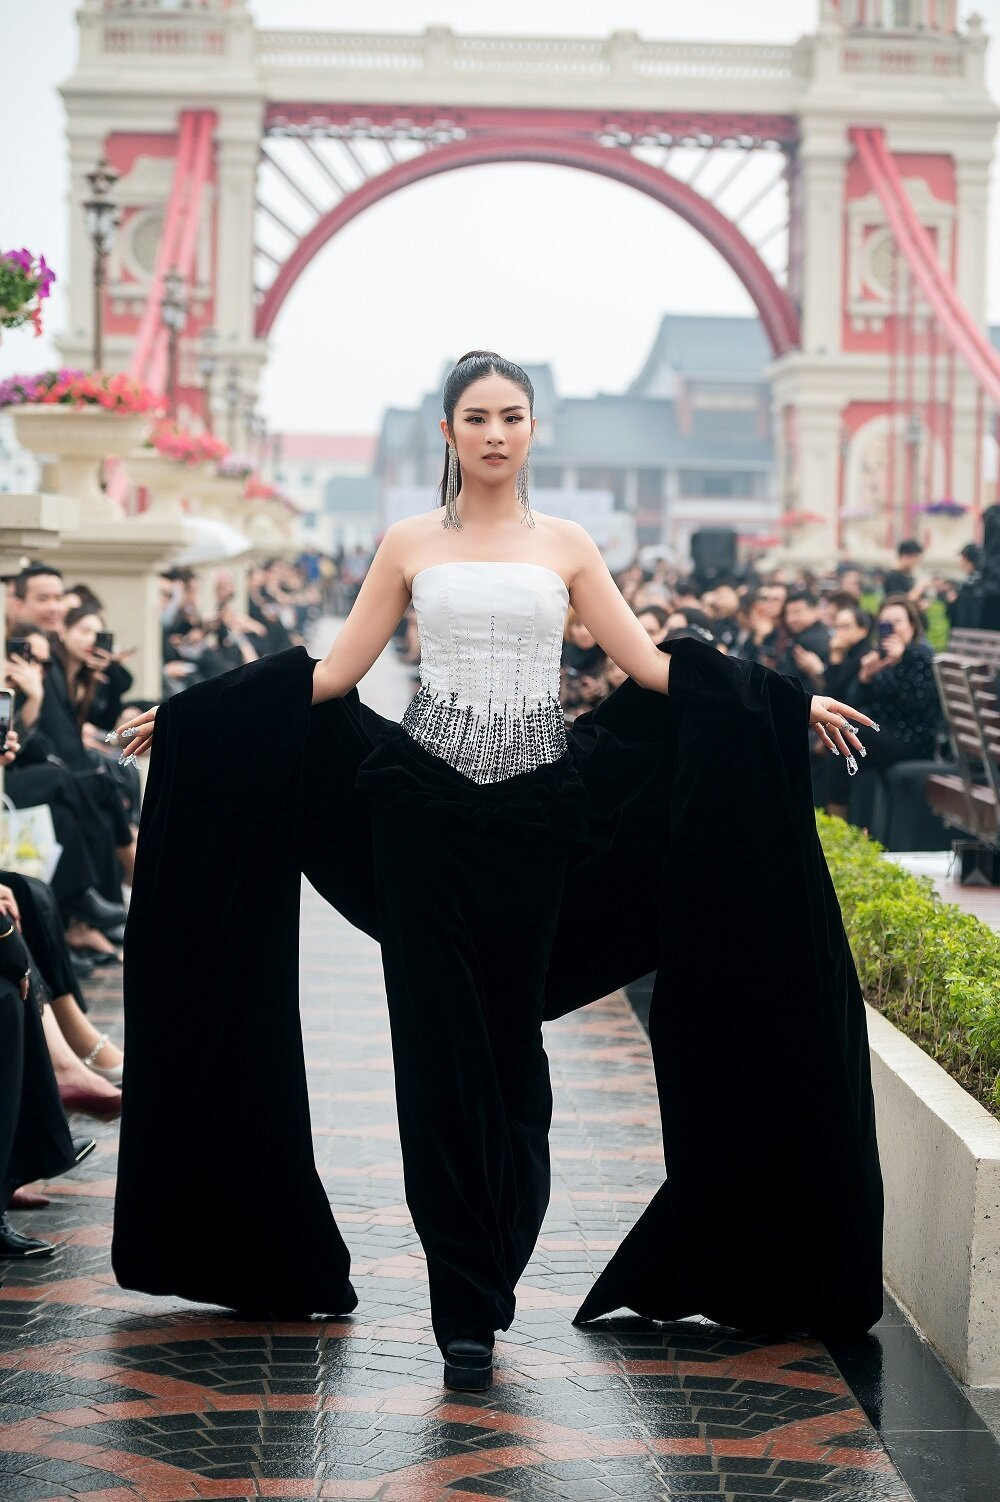 Hoa hậu Việt Nam 2010 biểu cảm sắc lạnh, visual đầy cuốn hút, kiêu sa với kiểu tóc buộc đuôi ngựa hiện đại. Người đẹp sải bước trong bộ đầm tông đen trắng, quây ngực, đính cườm và sequin ở thân trên, nhấn bằng áo choàng quá khổ.